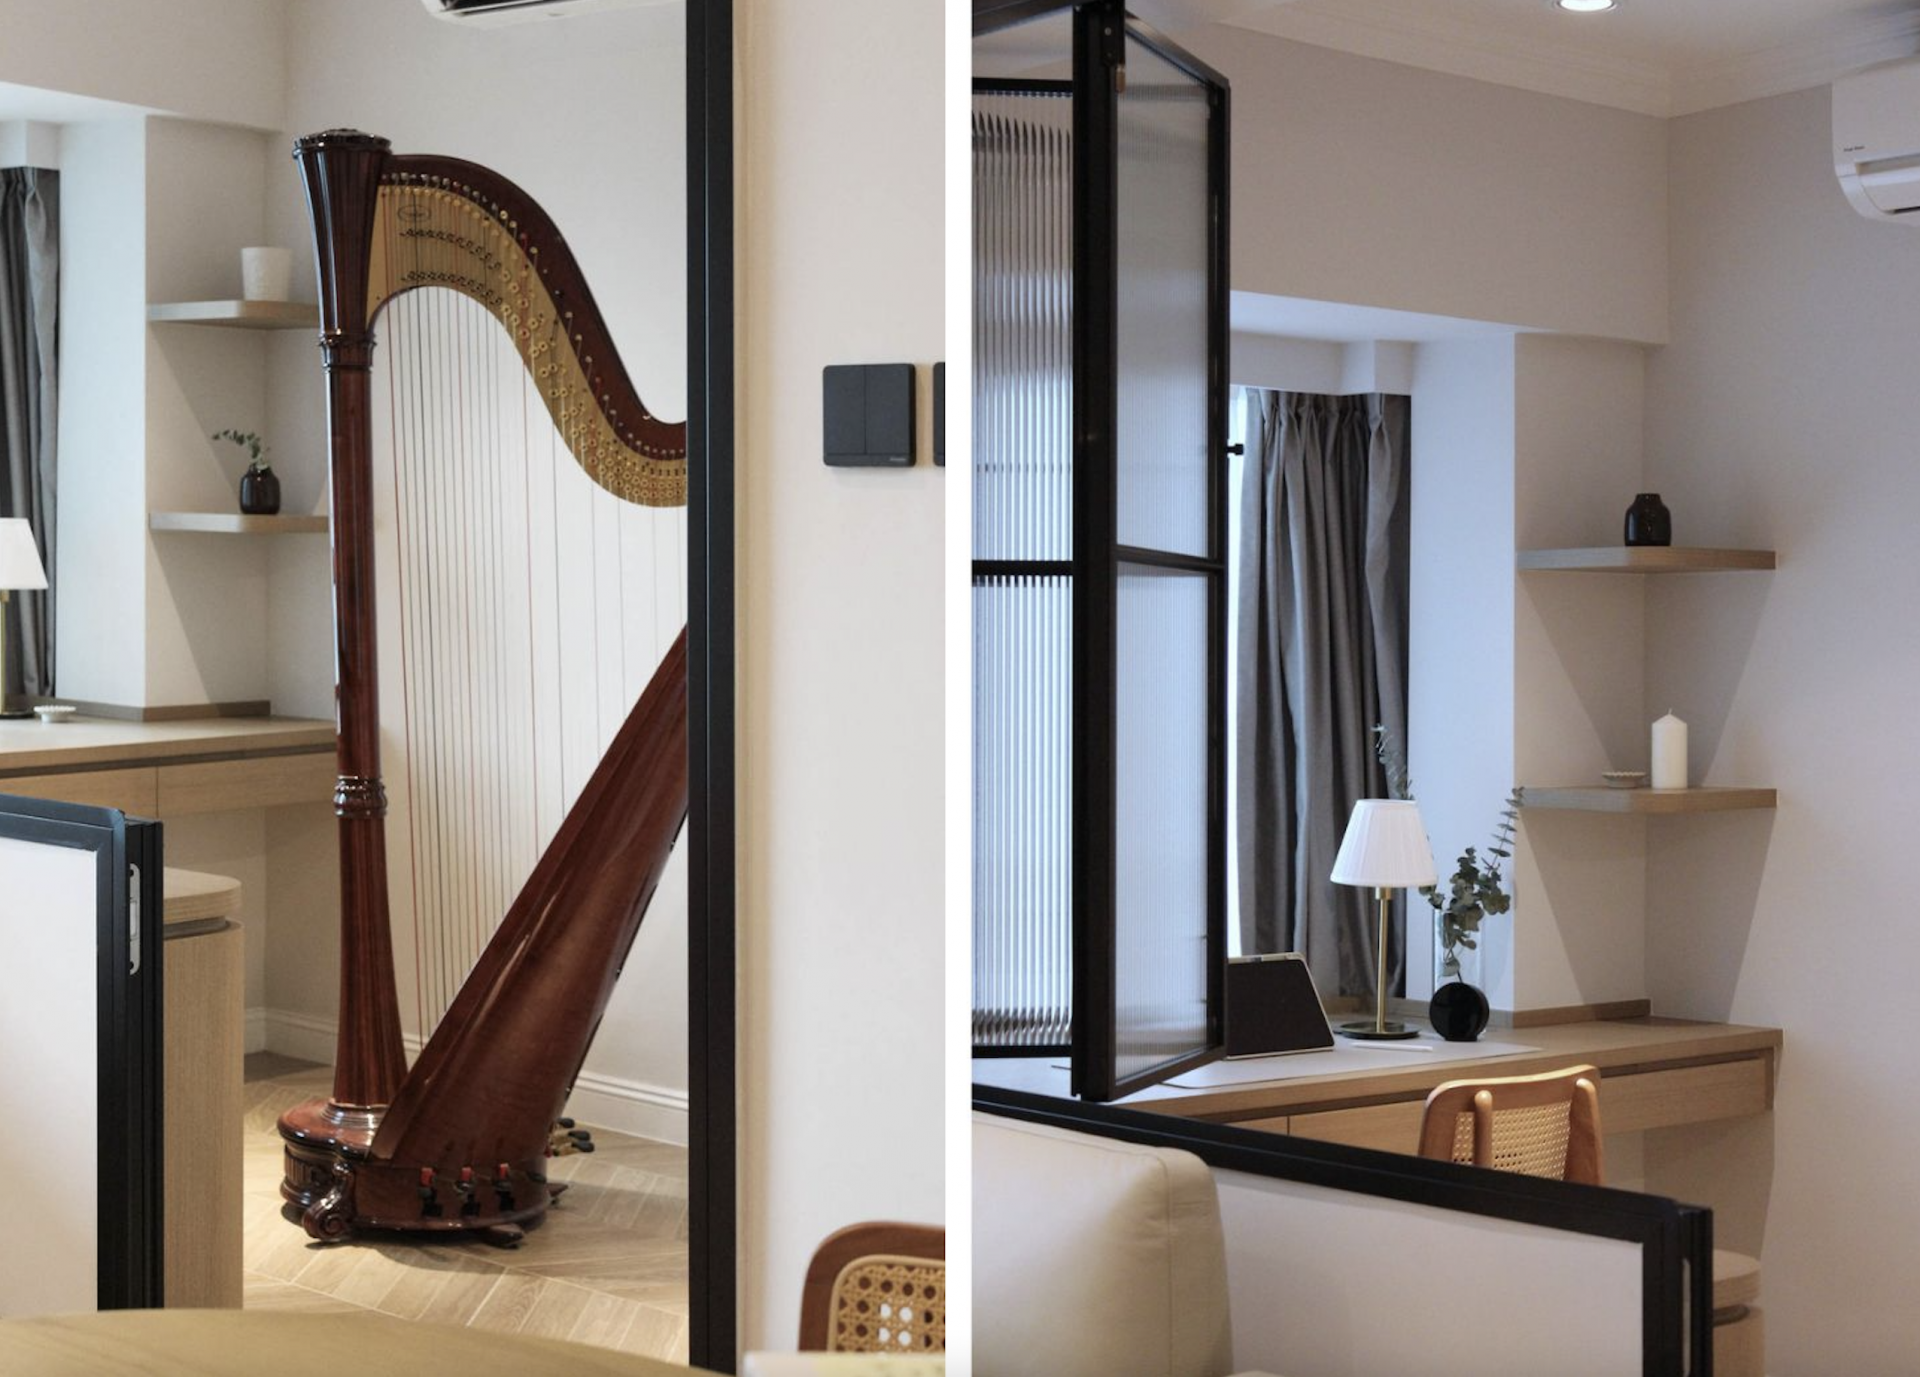 Harp at Home